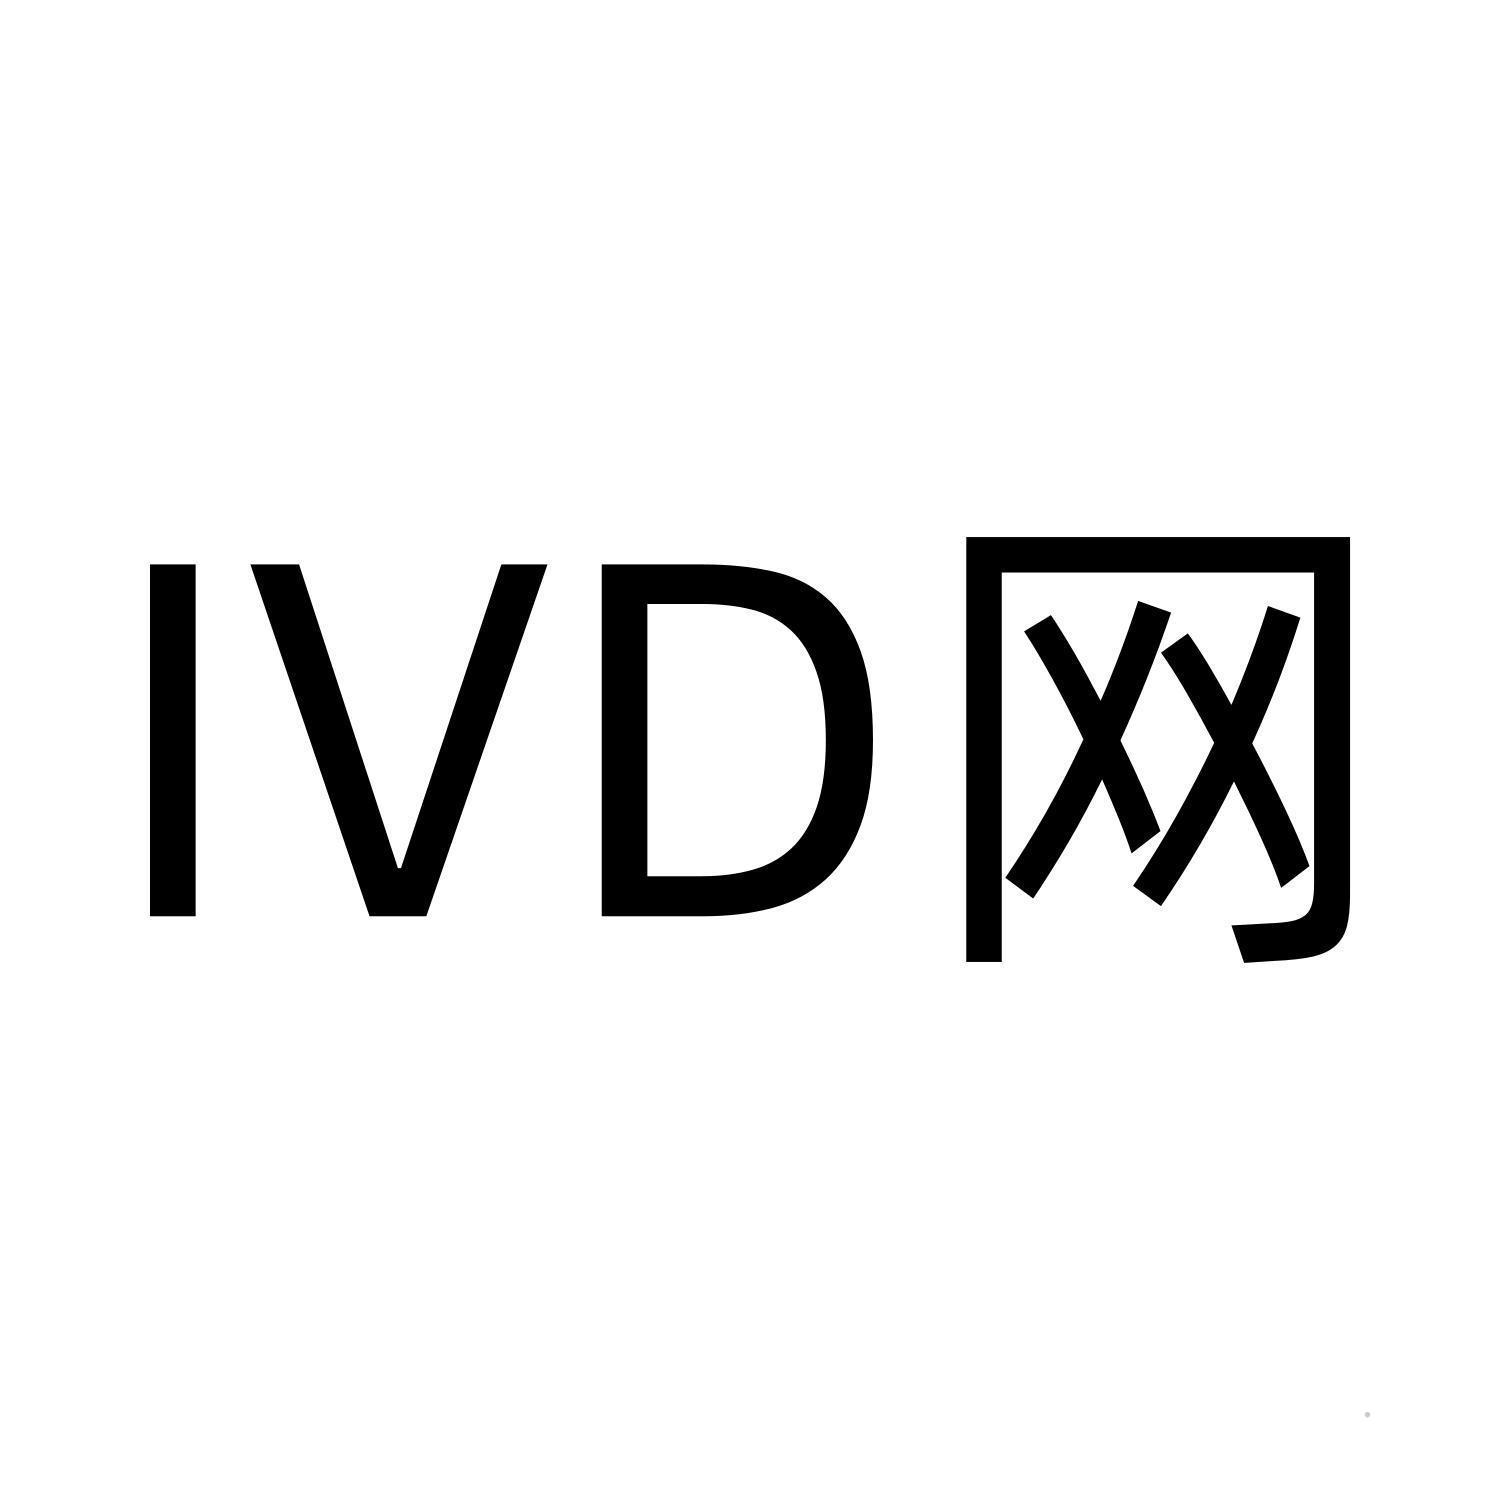 IVD 网logo